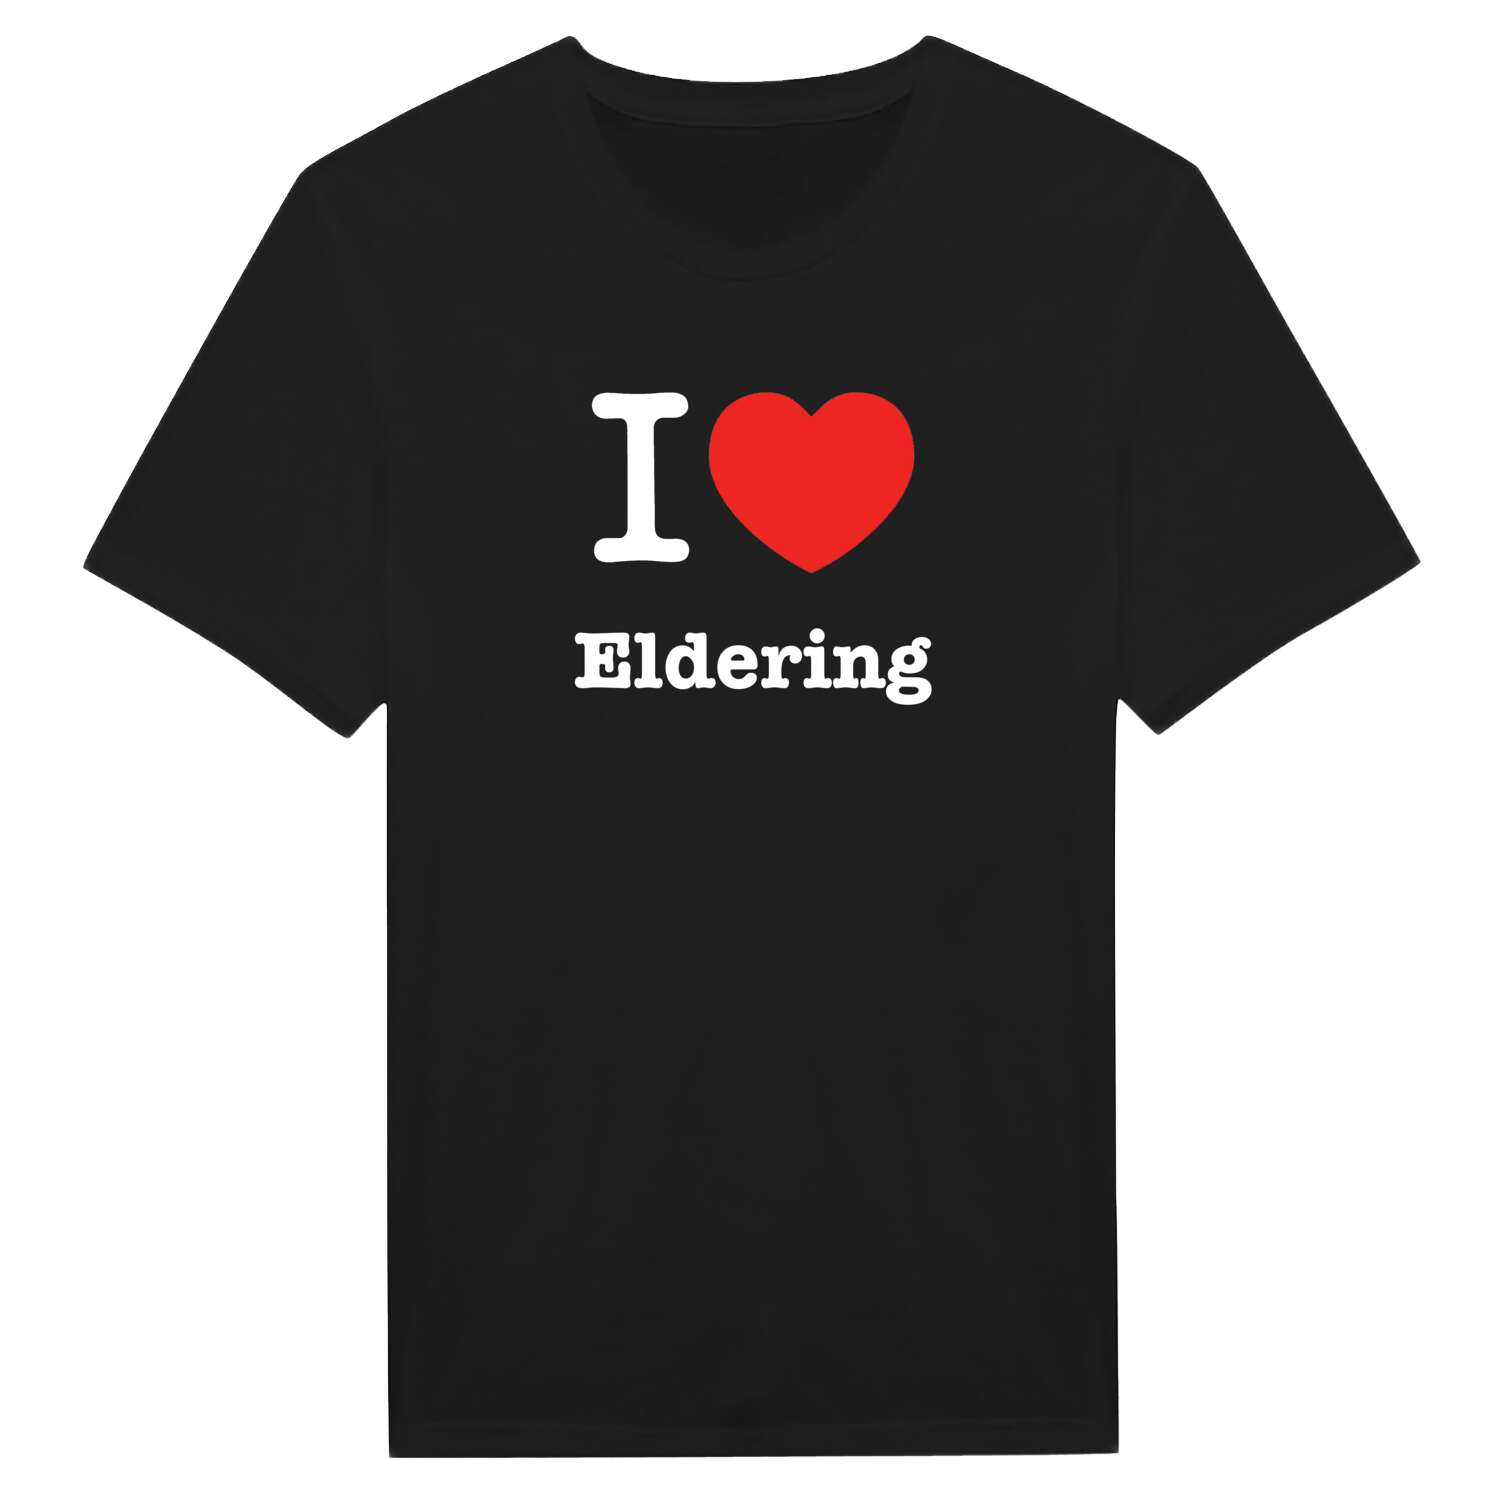 Eldering T-Shirt »I love«